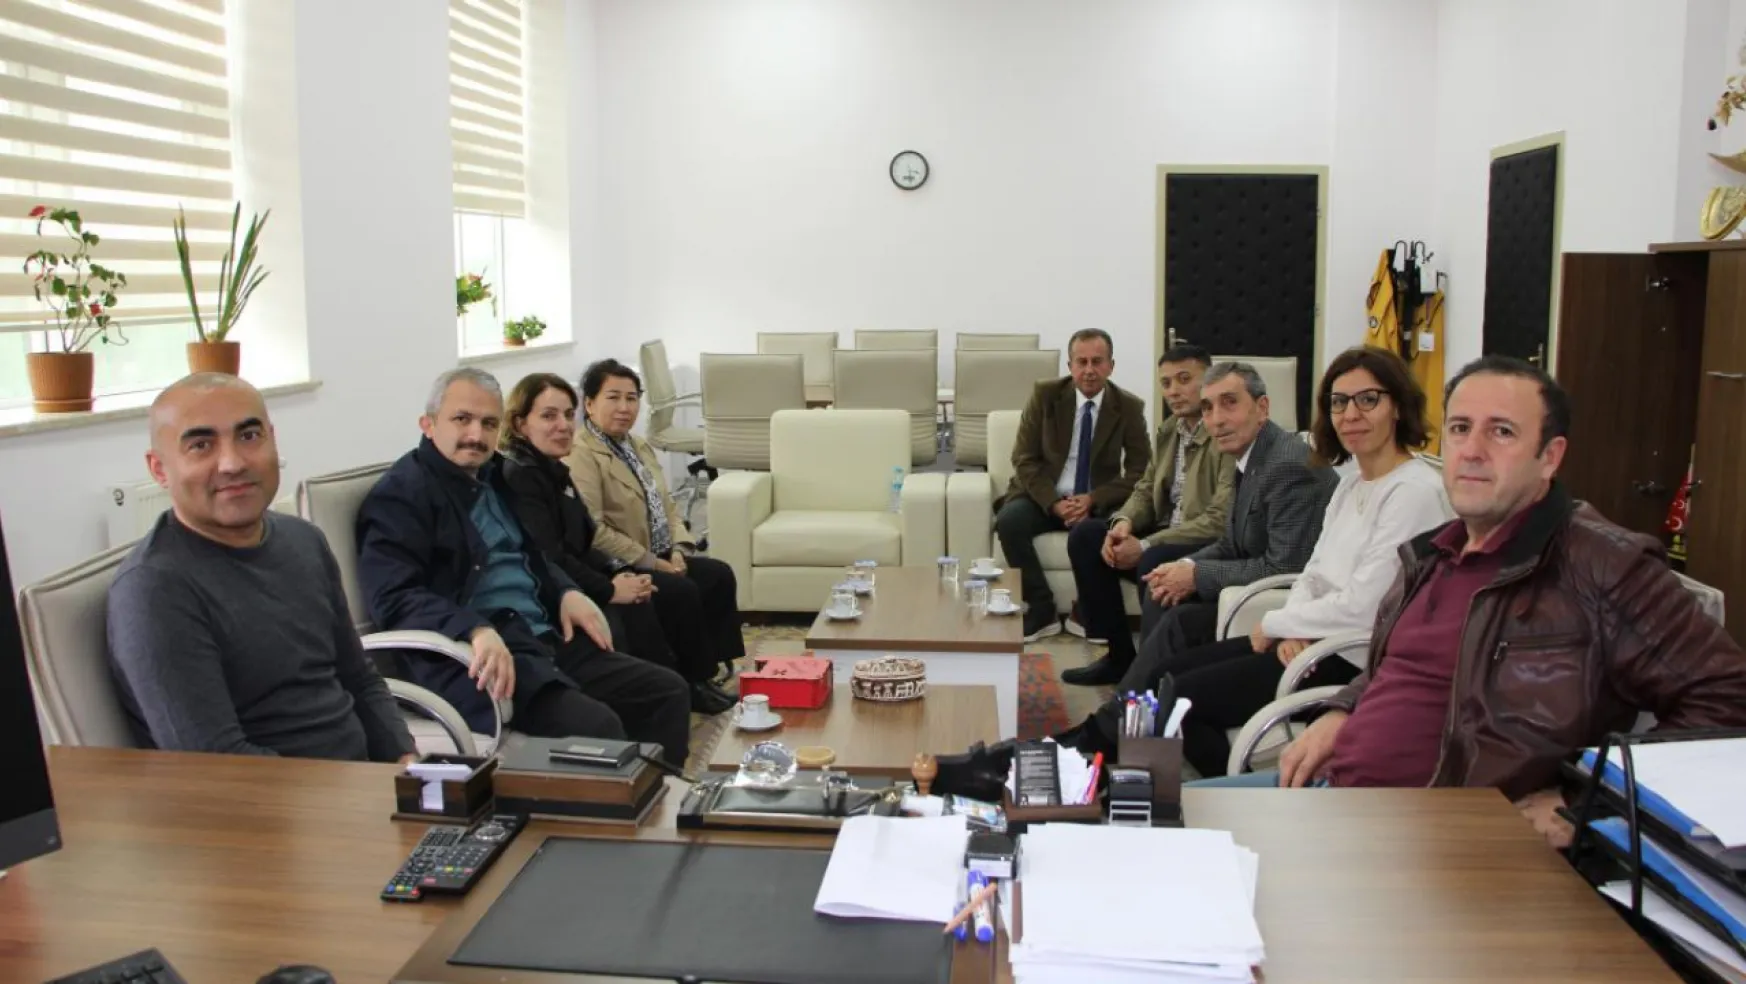 Özbekistan'dan Gelen Öğretim Üyeleri İletişim Fakültesi'ni Ziyaret Etti